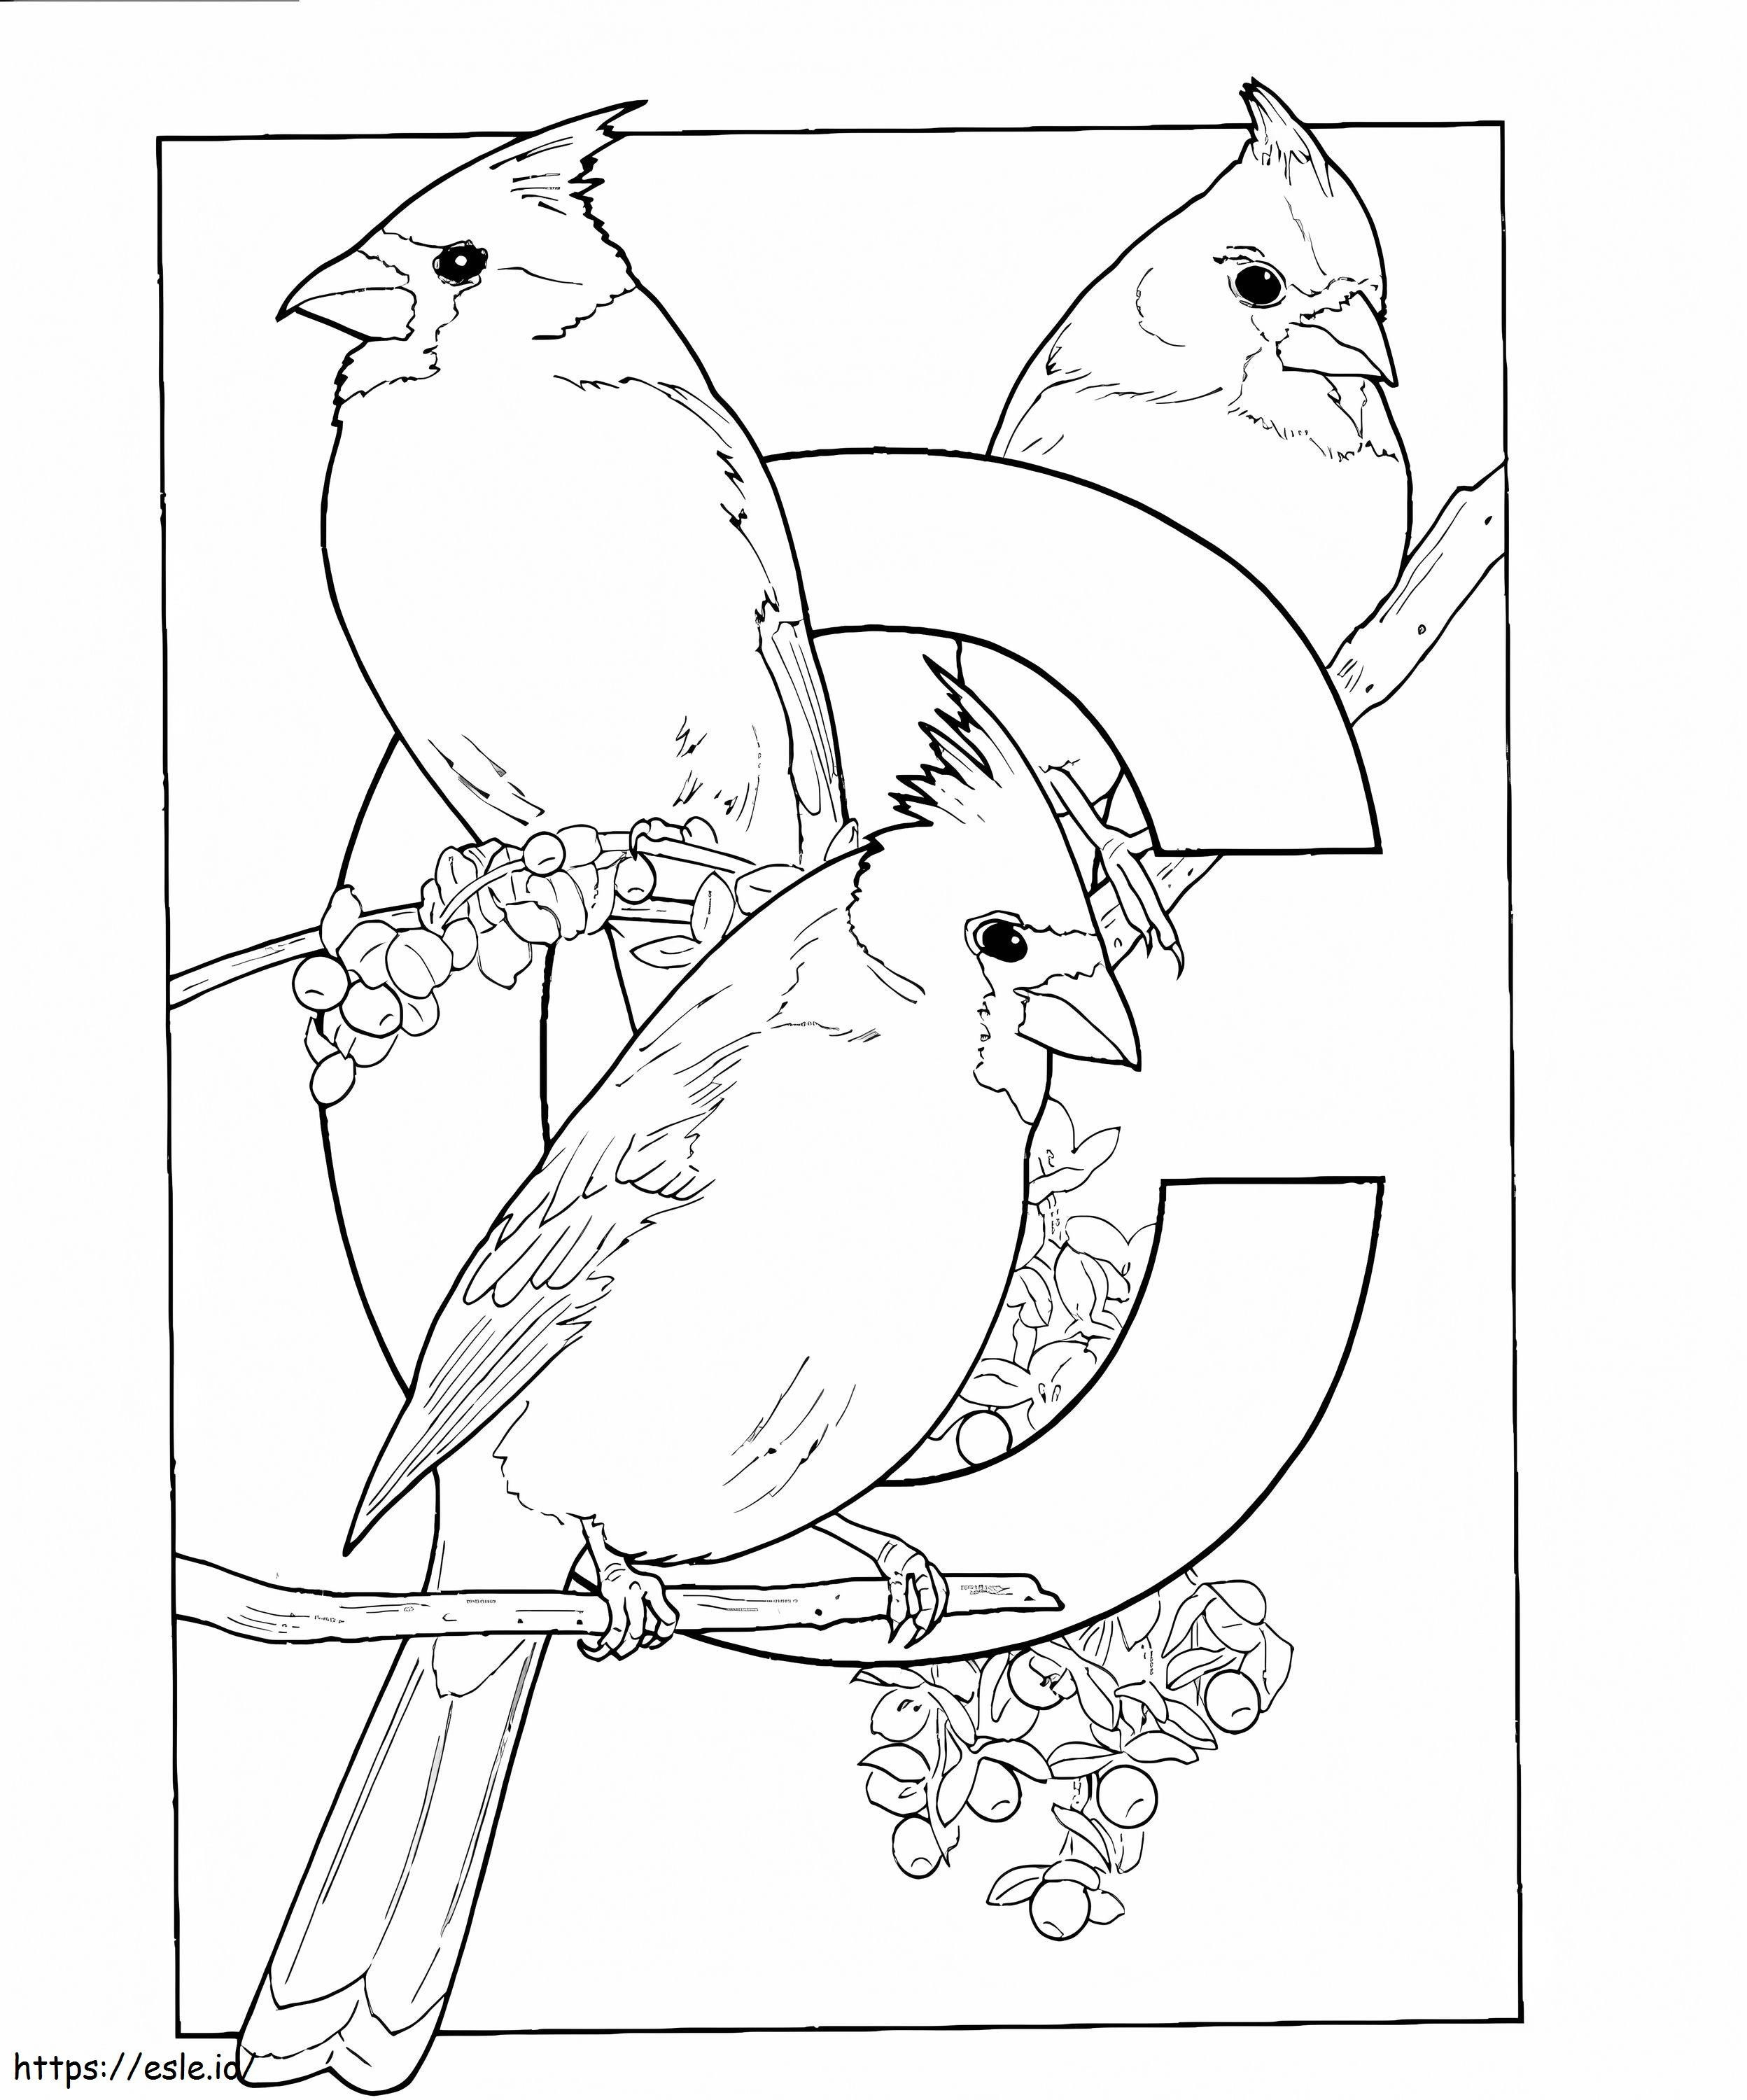 A C ábécé a Cardinal Birds számára készült kifestő